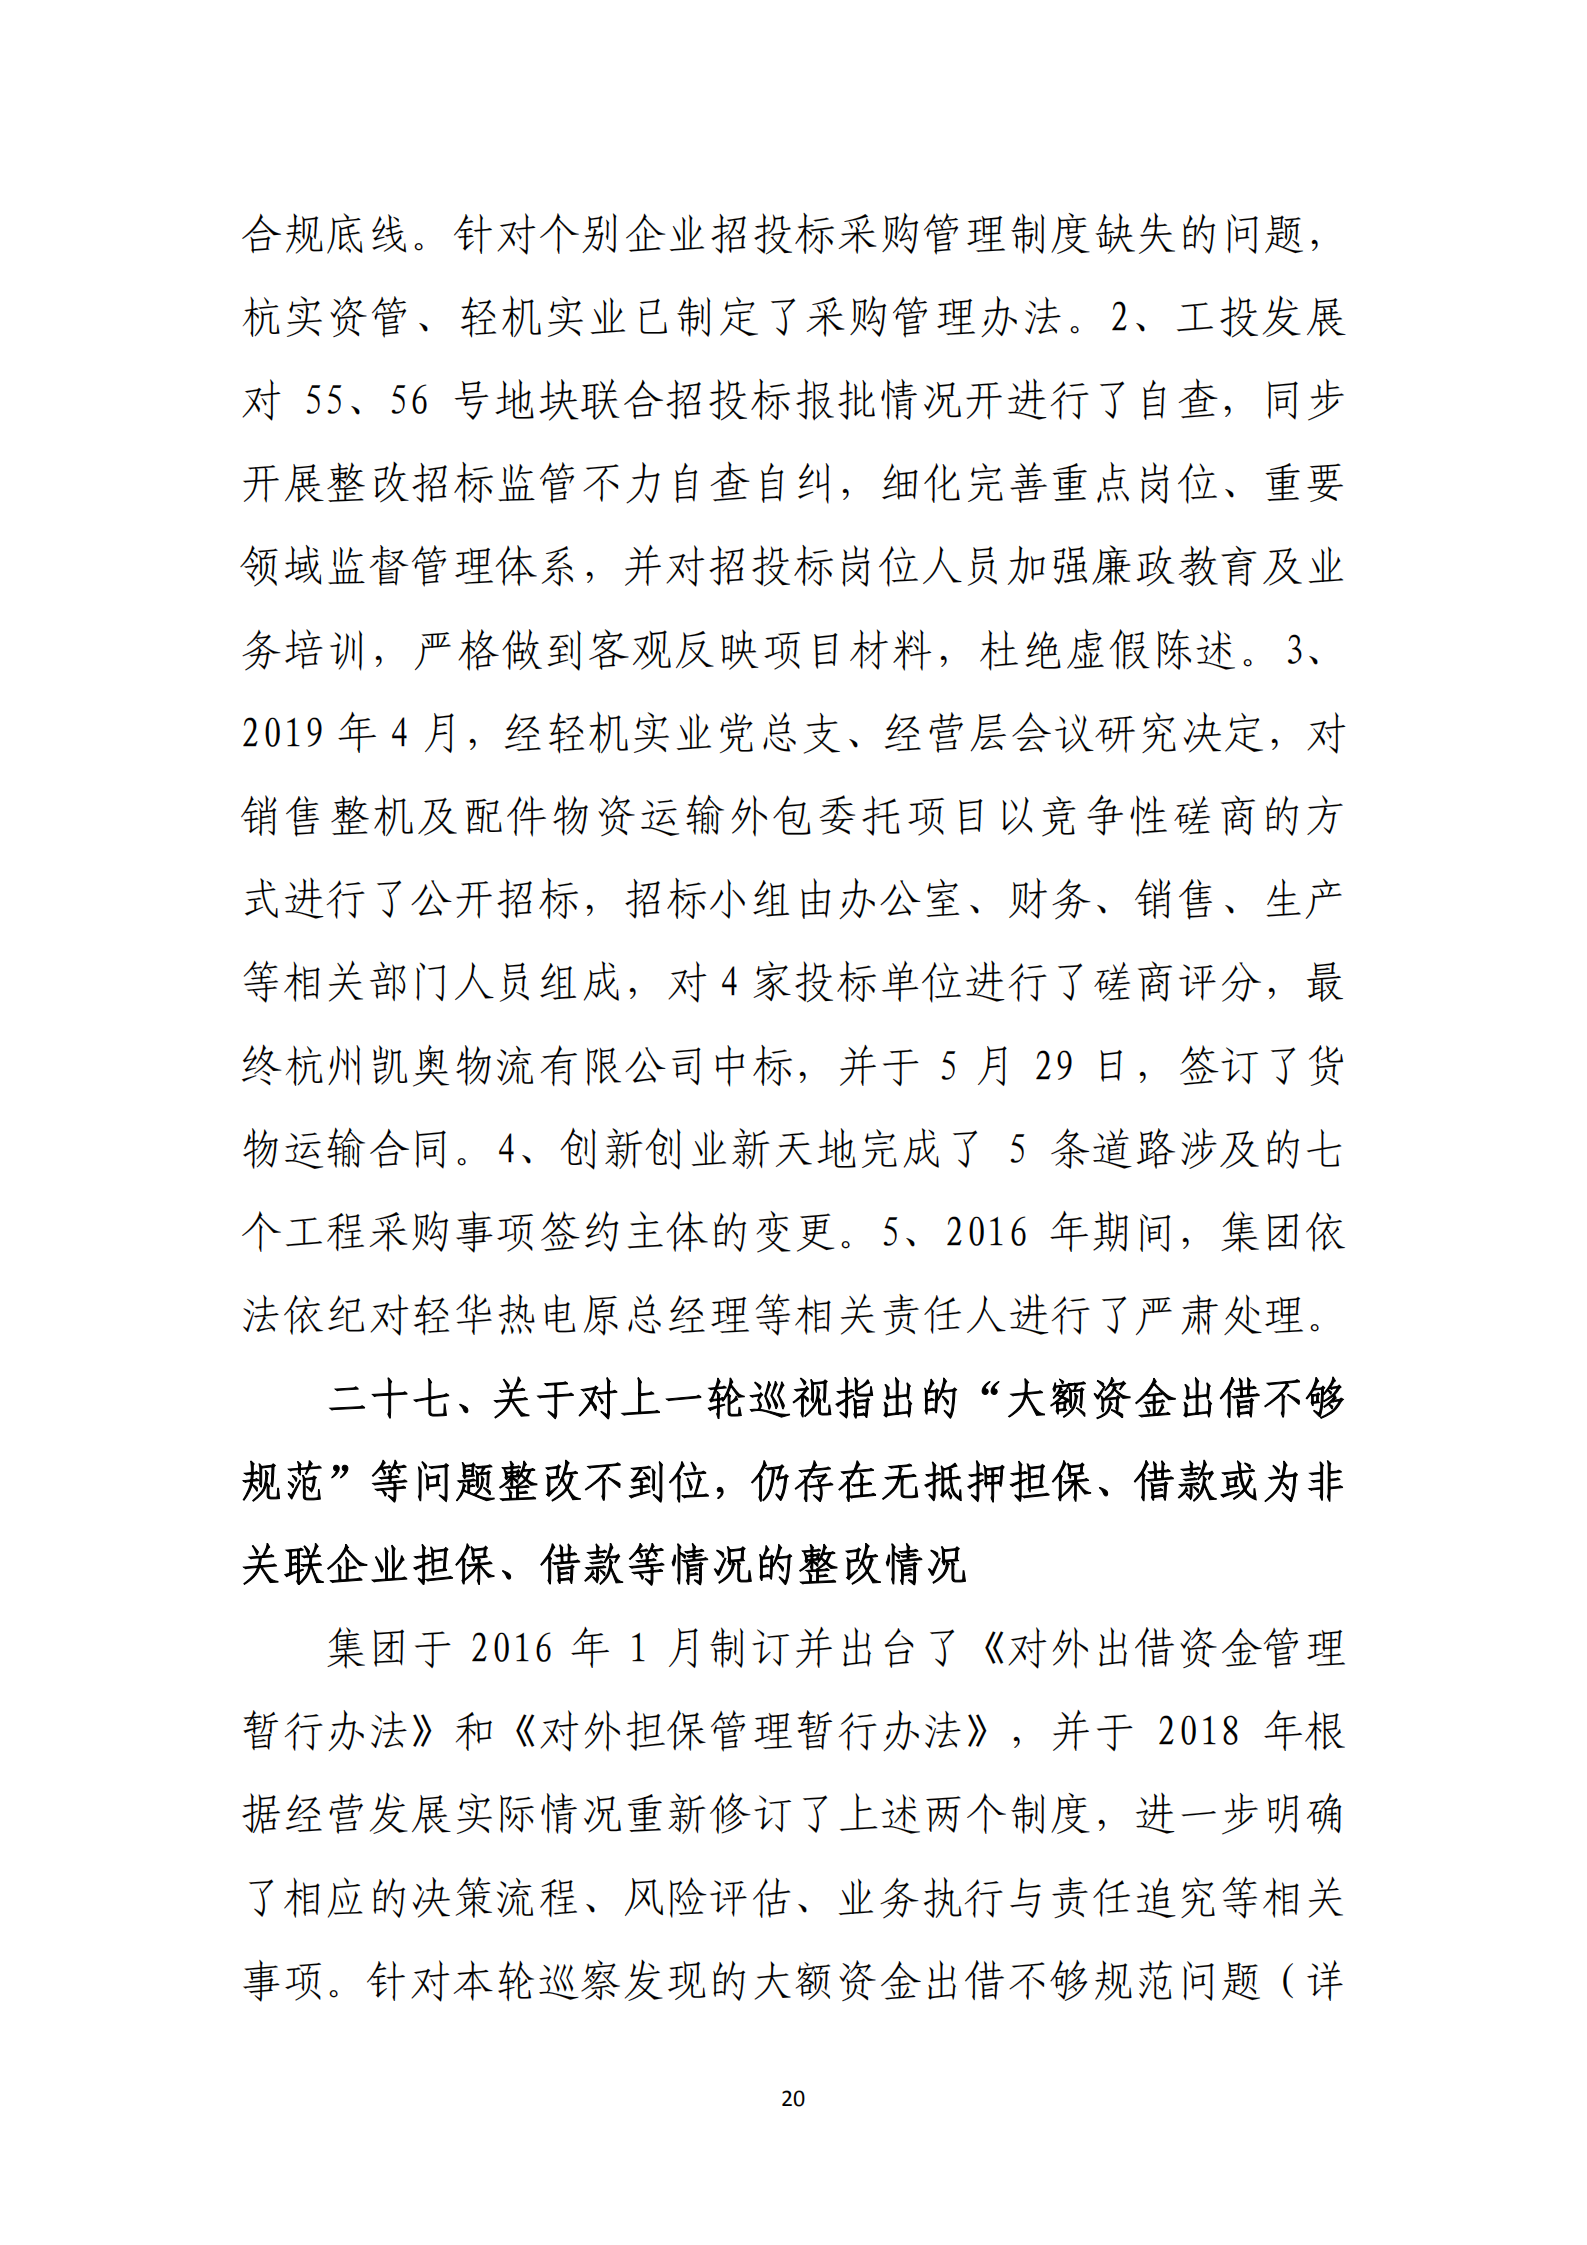 乐虎国际游戏官网党委关于巡察整改情况的通报_19.png